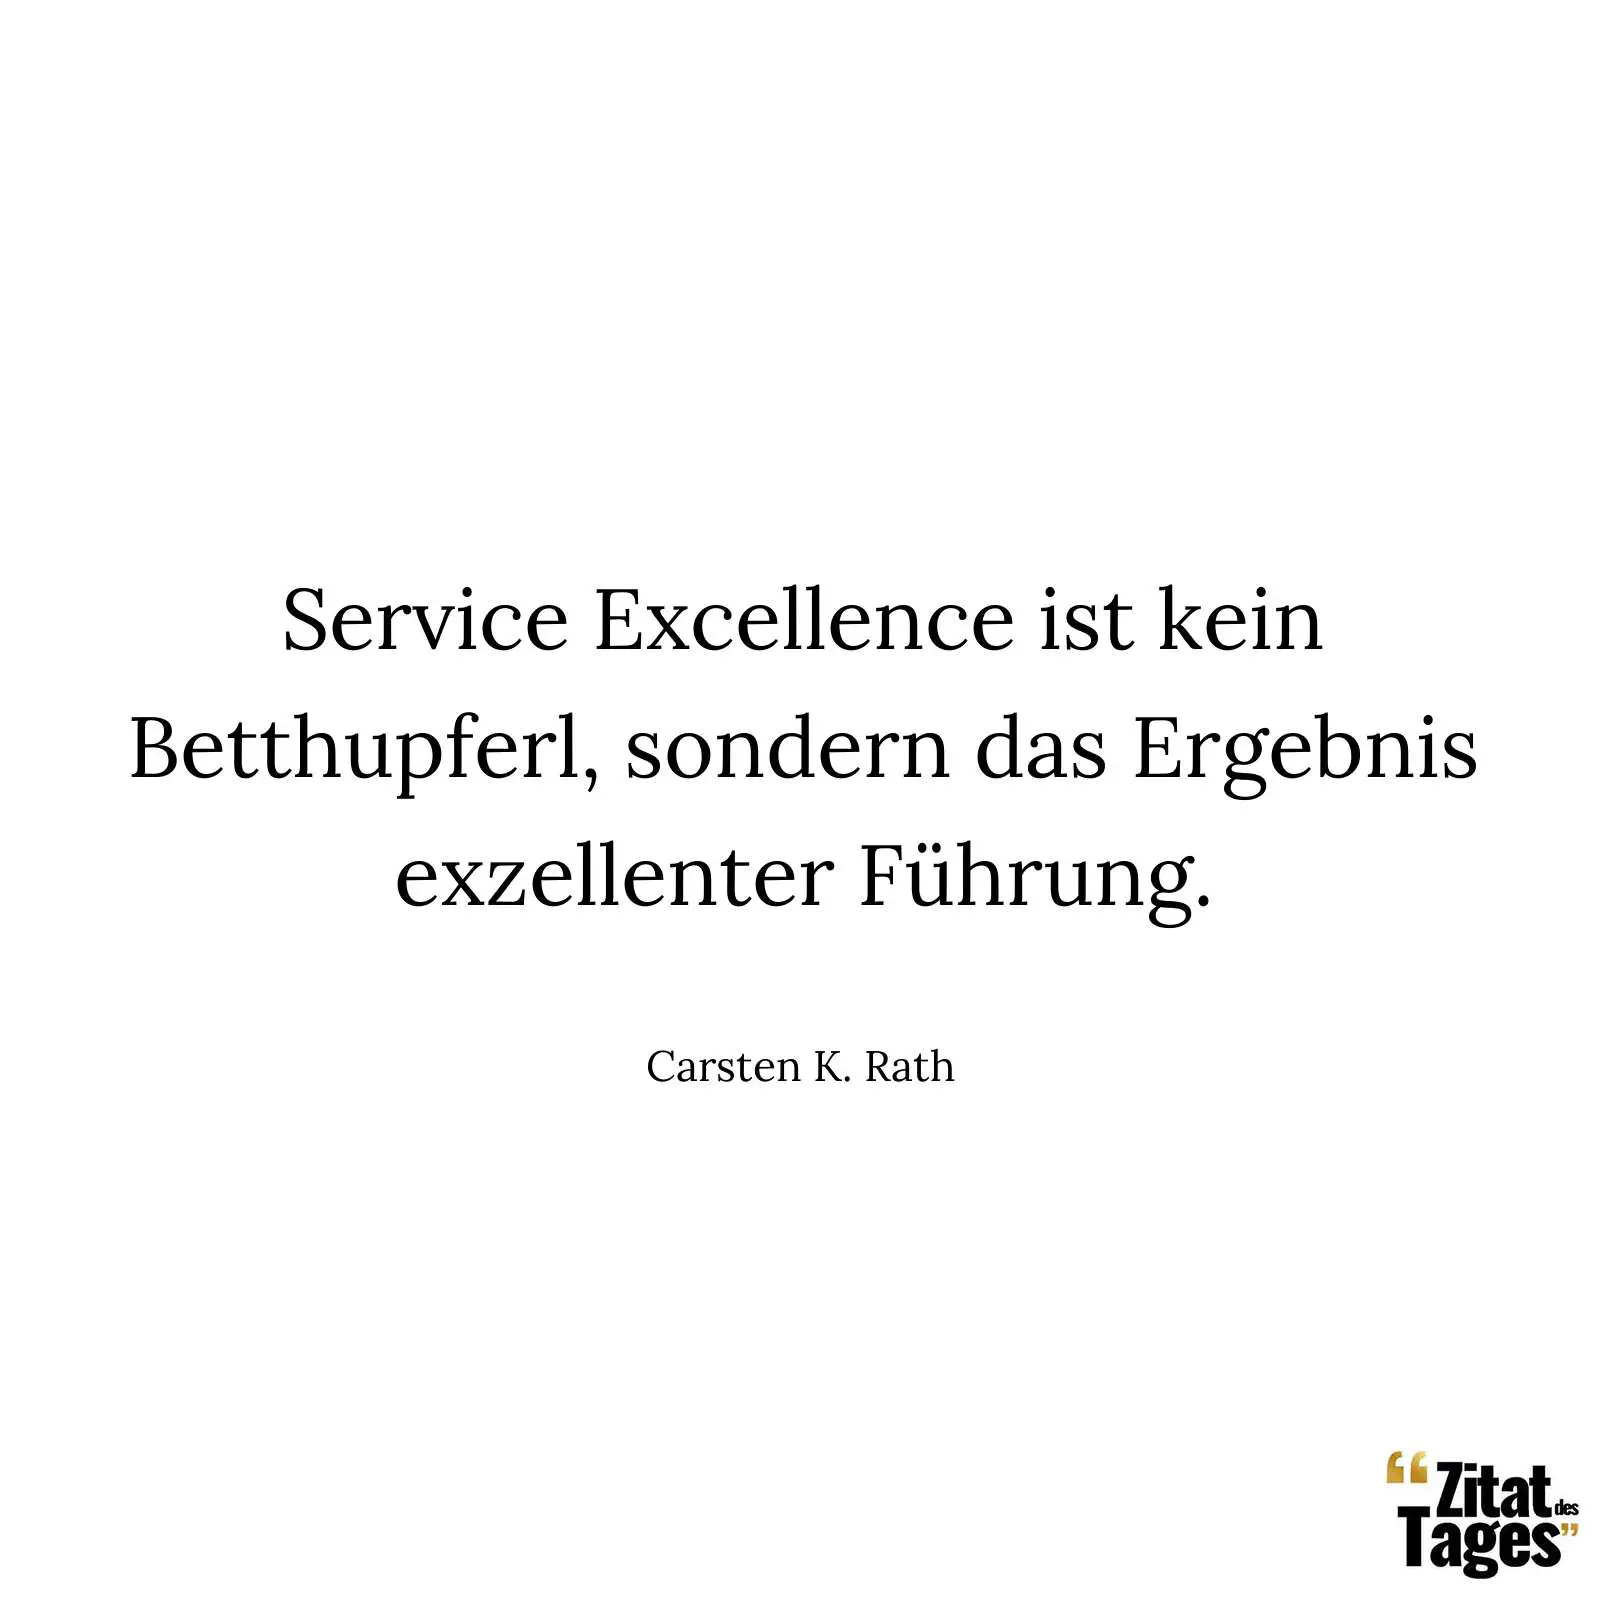 Service Excellence ist kein Betthupferl, sondern das Ergebnis exzellenter Führung. - Carsten K. Rath